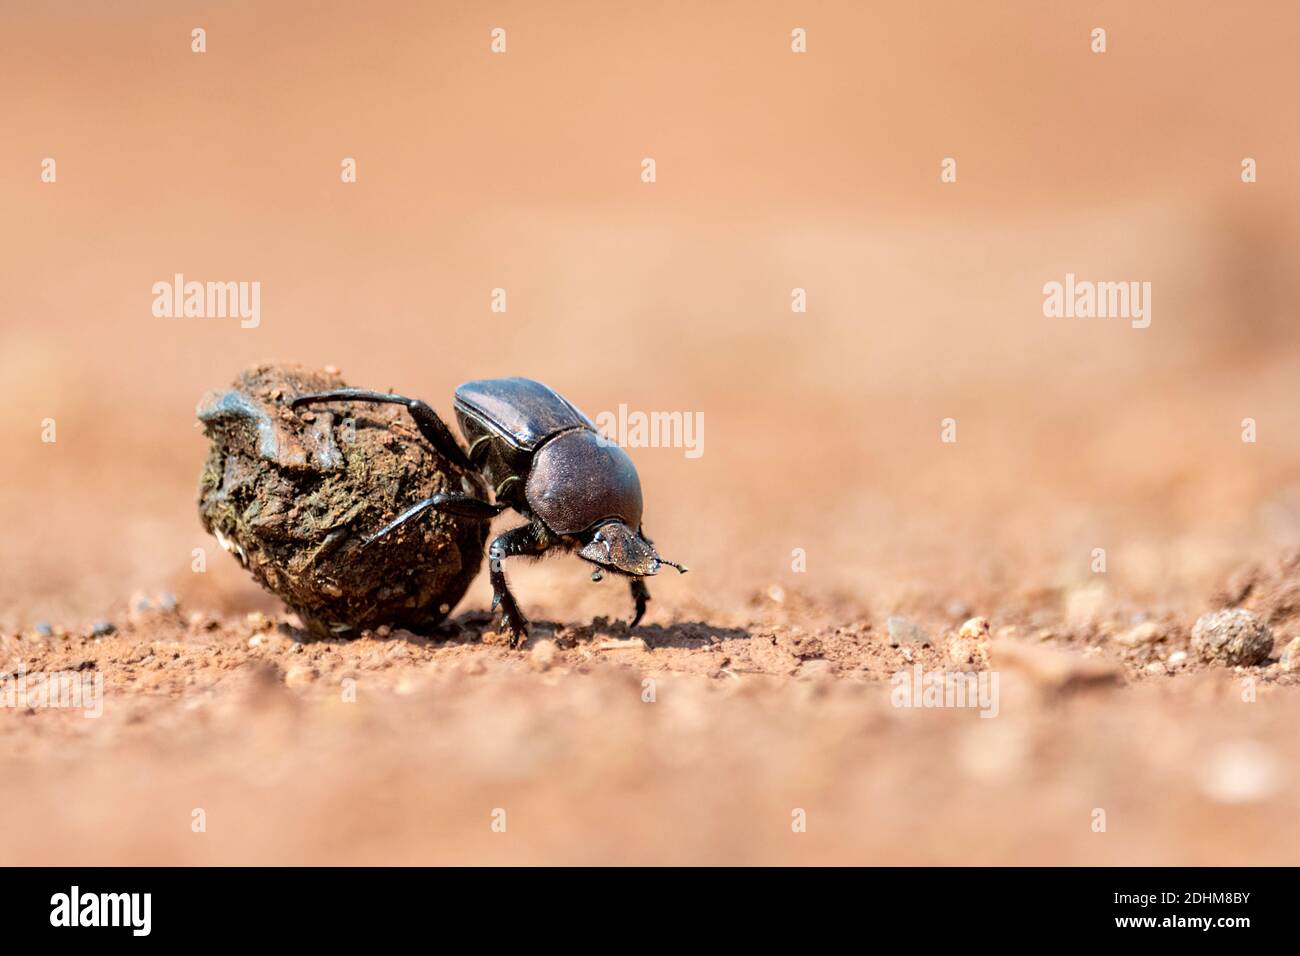 Dung scolyte roulant dung dans la réserve privée de Zimanga, Afrique du Sud. Peut-être grand Dung Beetle de cuivre (Kheper nigroaeneus). Banque D'Images